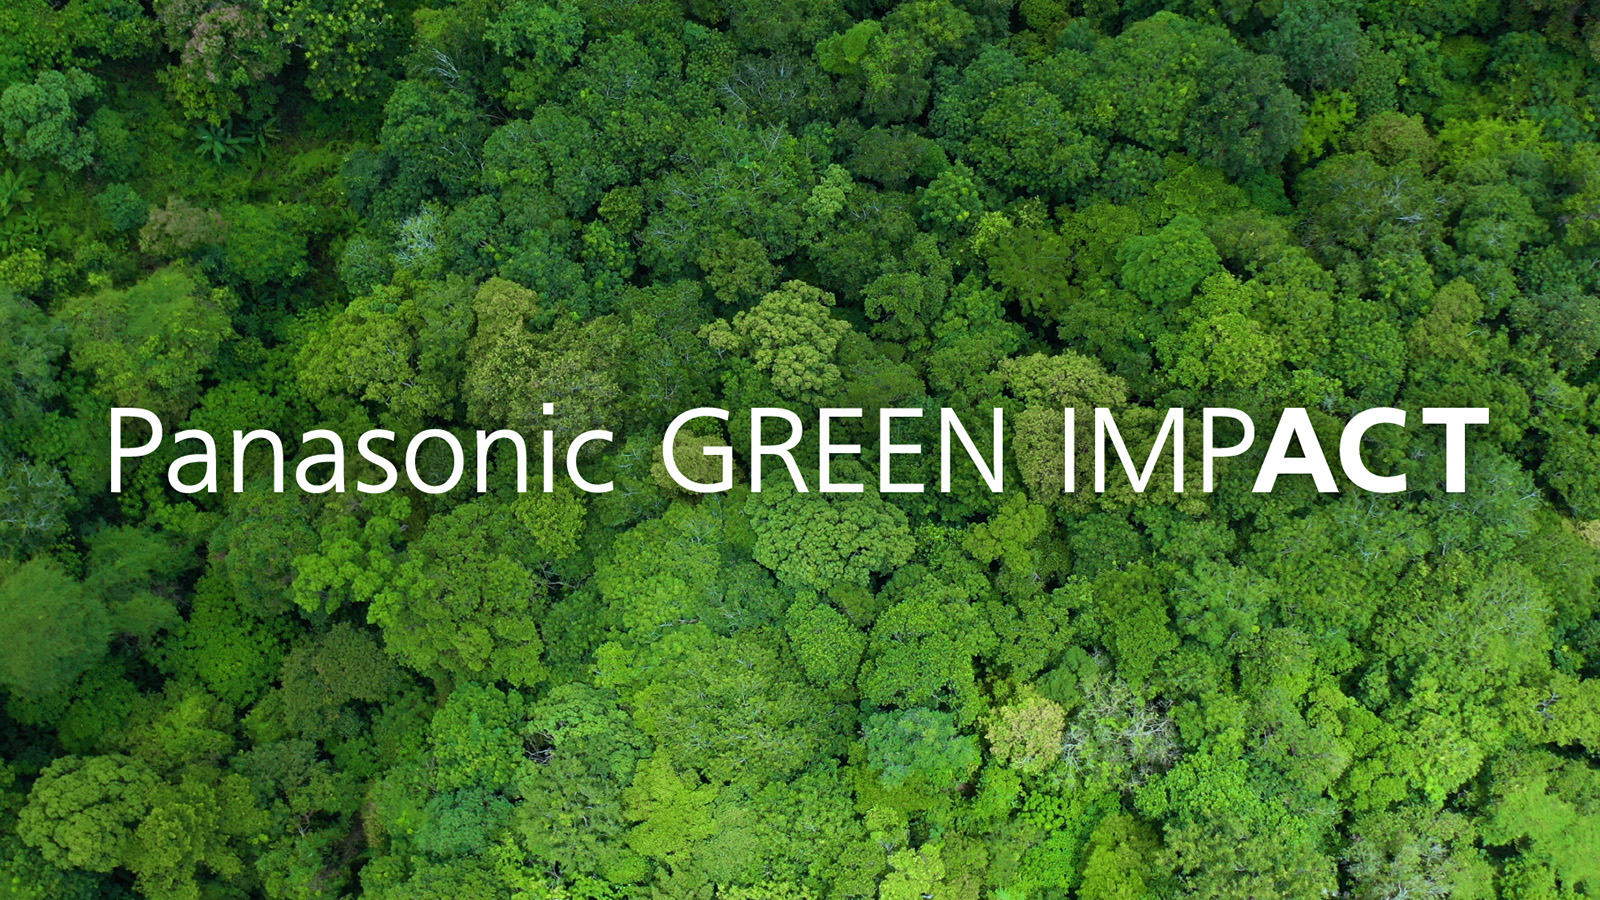 “Panasonic GREEN IMPACT”